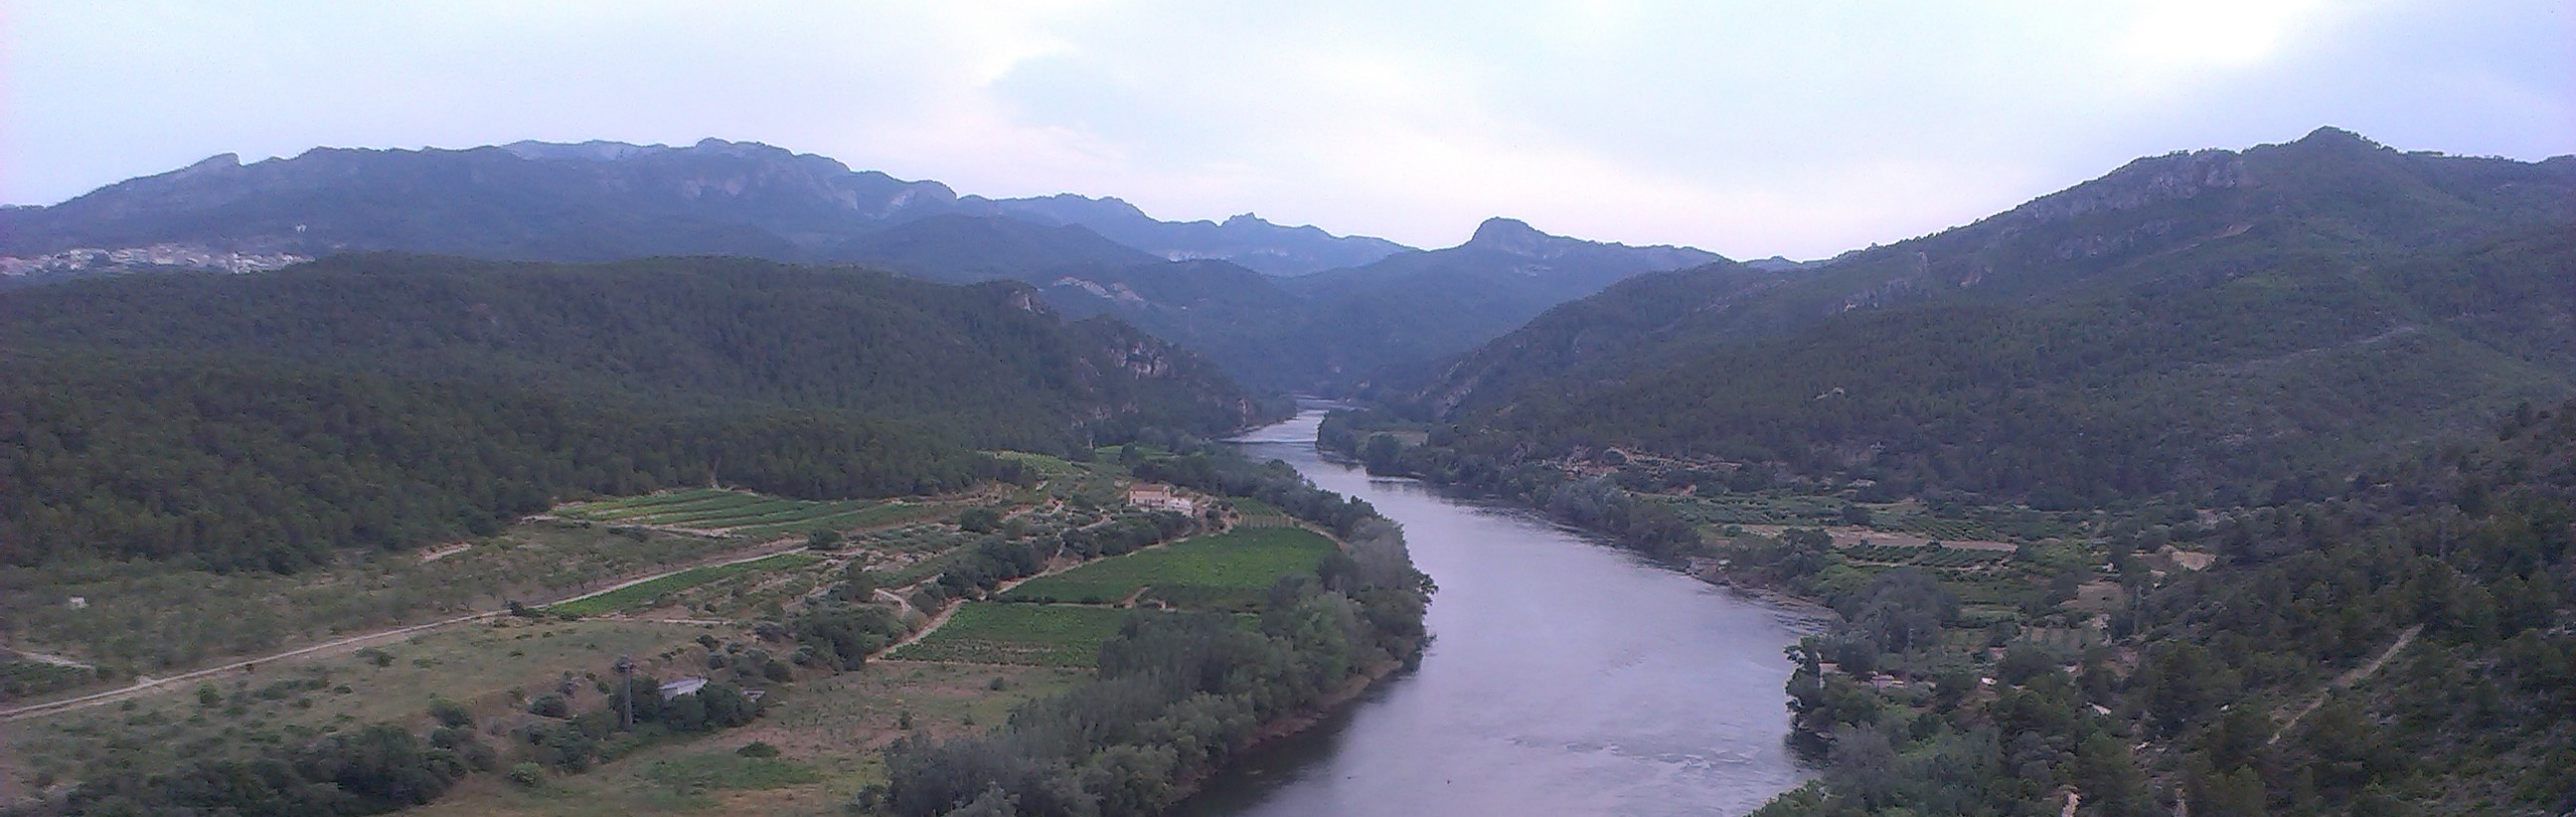 La CHE presenta un proyecto que compara las imágenes y planos de la Cuenca del Ebro en 1927 con los actuales